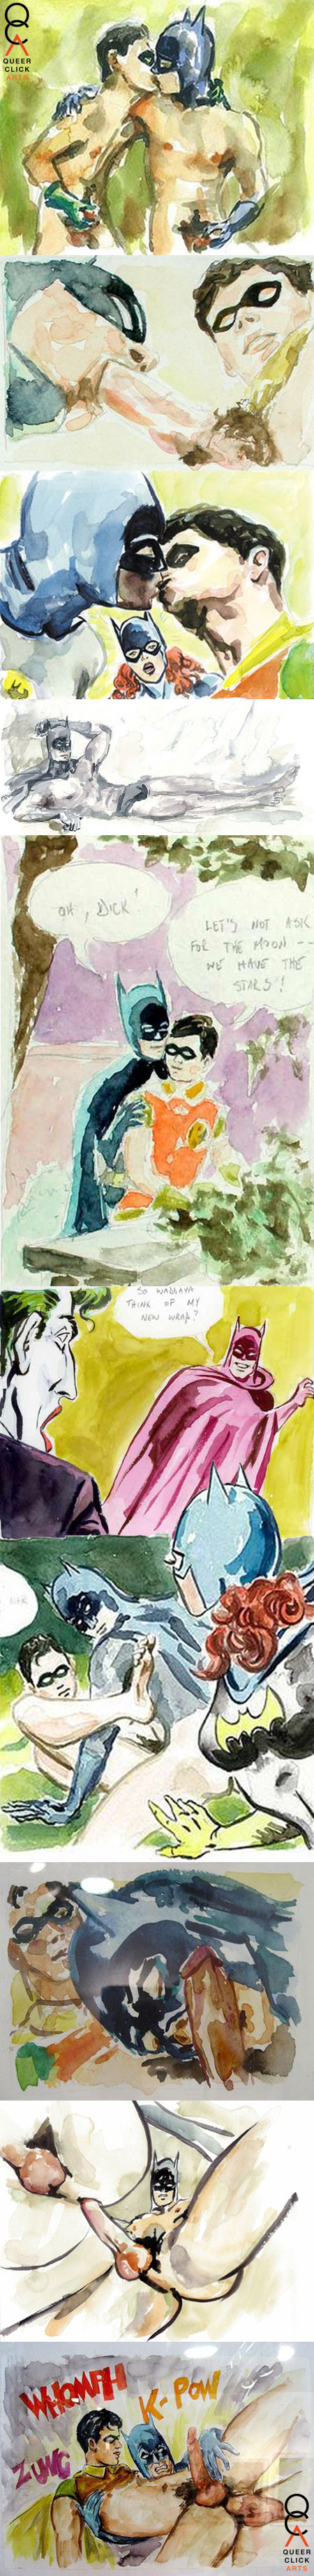 QCA Art: Mark Chamberlain's Queer Batman